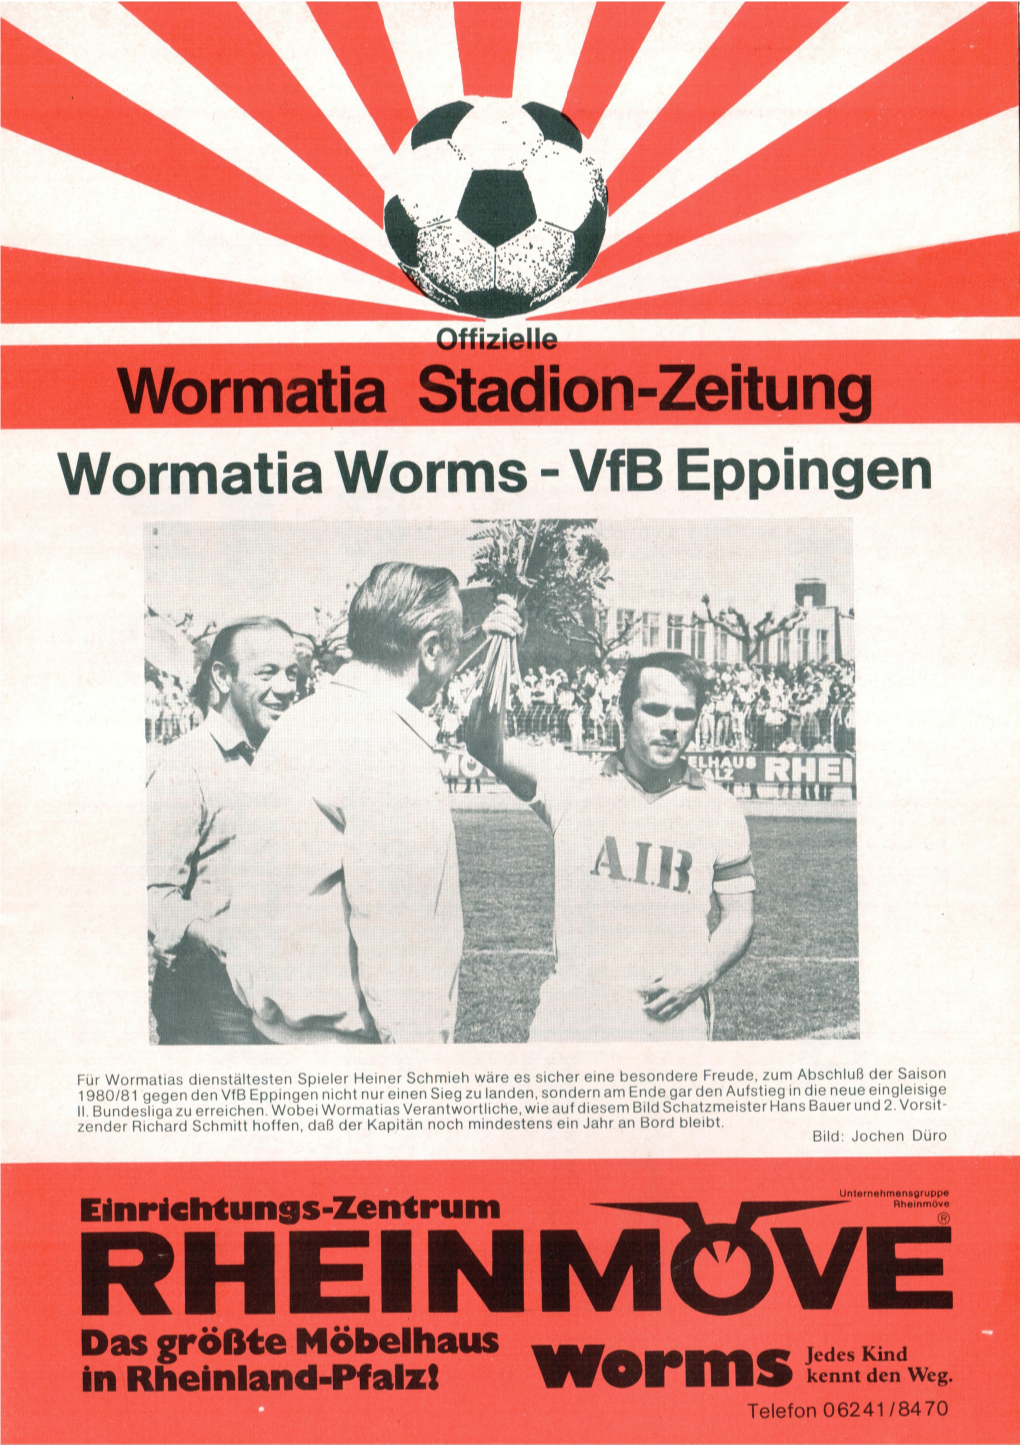 Wormatia Stadion-Zeitung Wormatia Stadion-Zeitung Wormatia Worms - Vfb Eppingen .9”